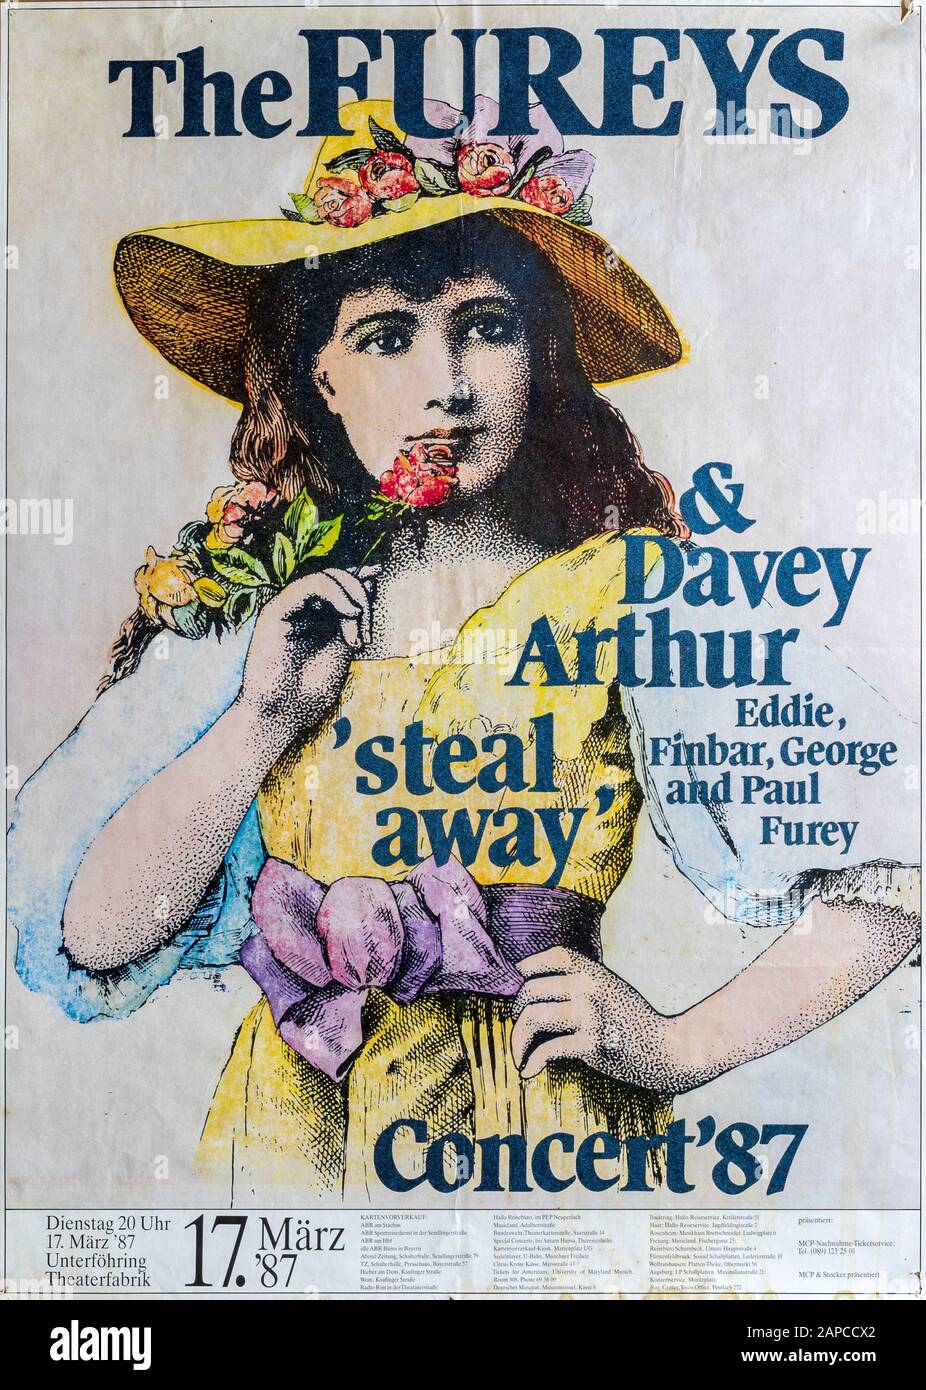 The Fureys & Davey Arthur Steal Away concert Munich 1987, Musical concert poster Stock Photo